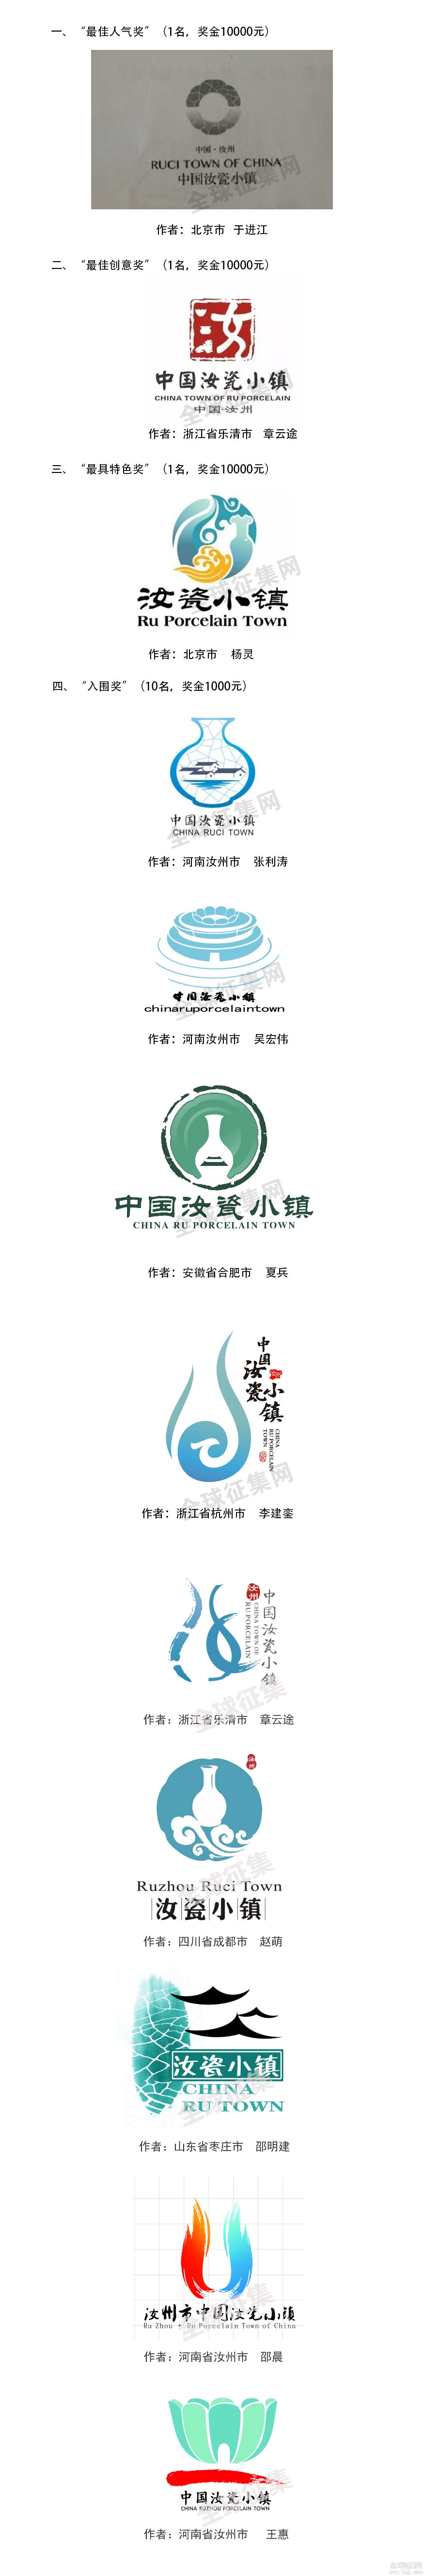 中国汝瓷小镇logo征集揭晓